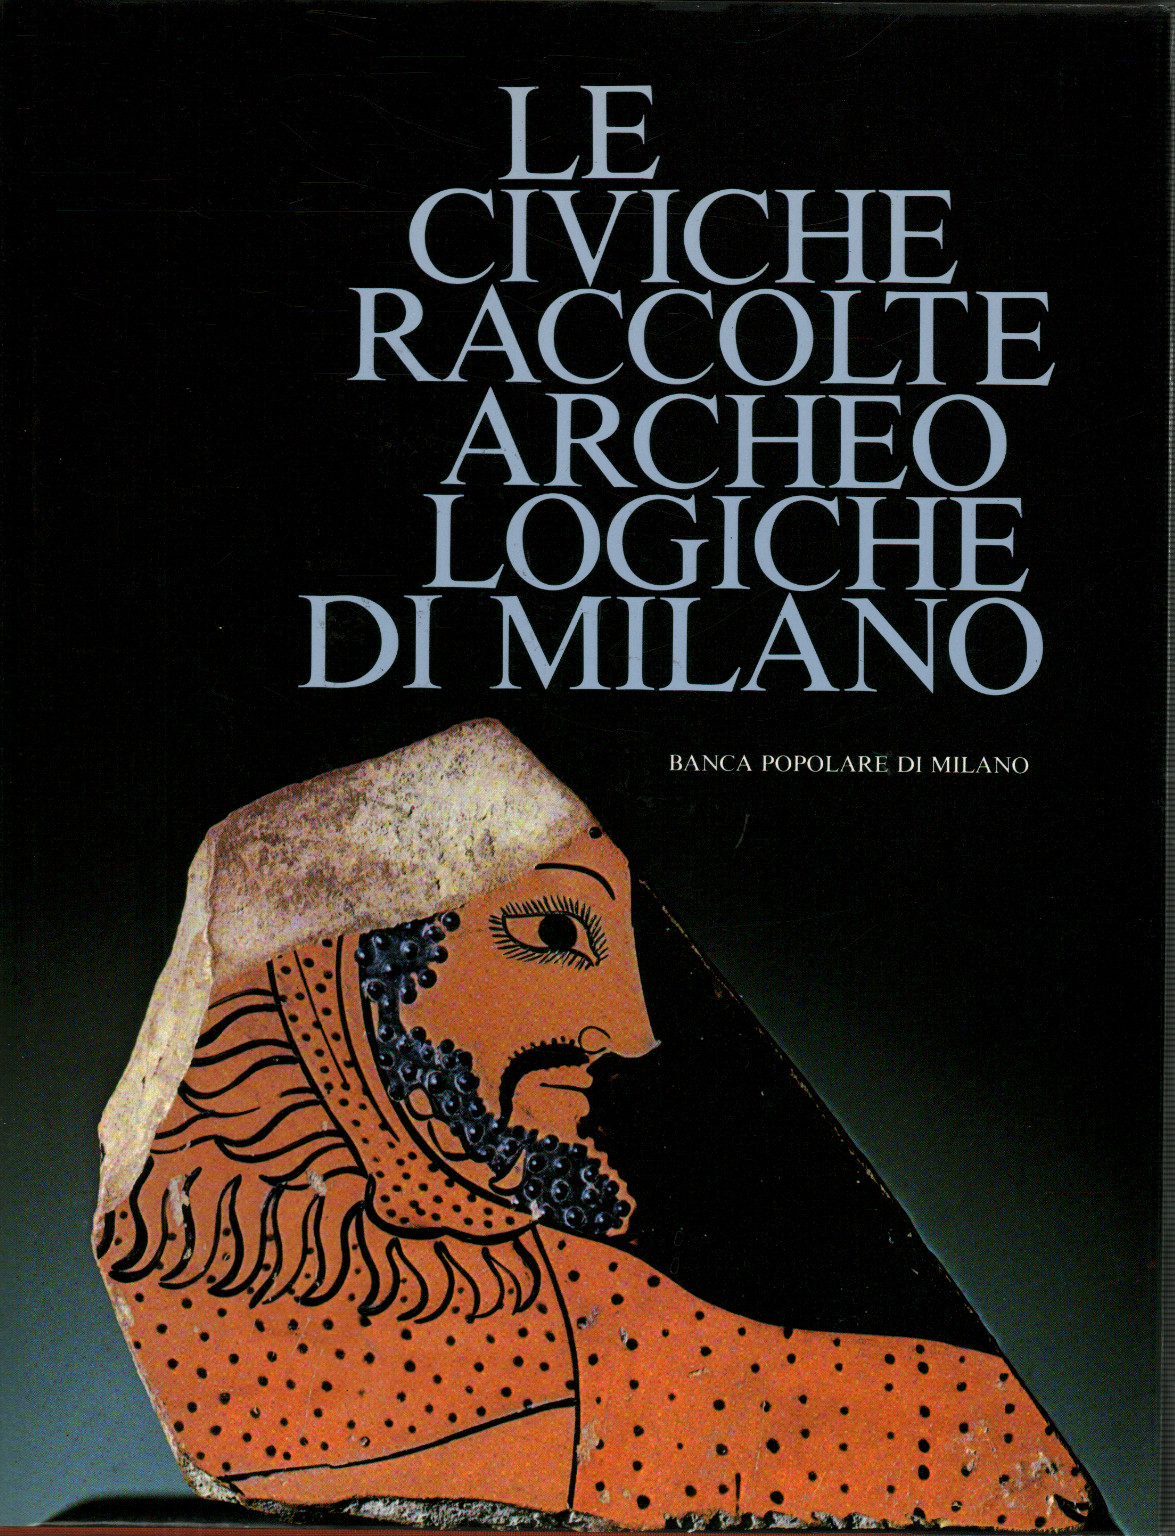 Die städtischen archäologischen Sammlungen von Mailand, s.a.